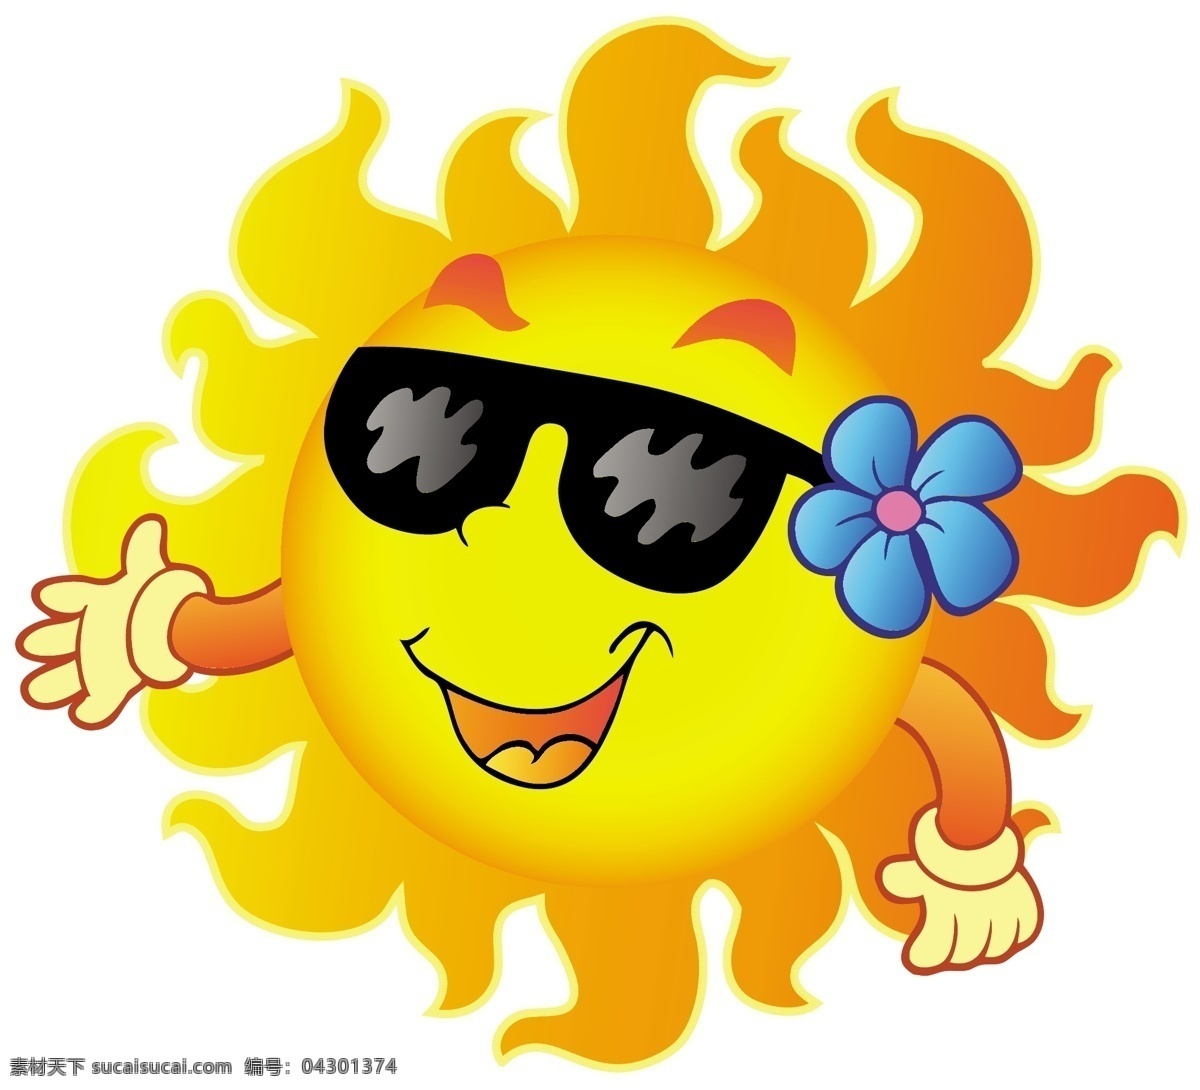 可爱太阳表情 太阳 表情 墨镜 花朵 夏日 夏天 时尚 梦幻 背景 底纹 矢量